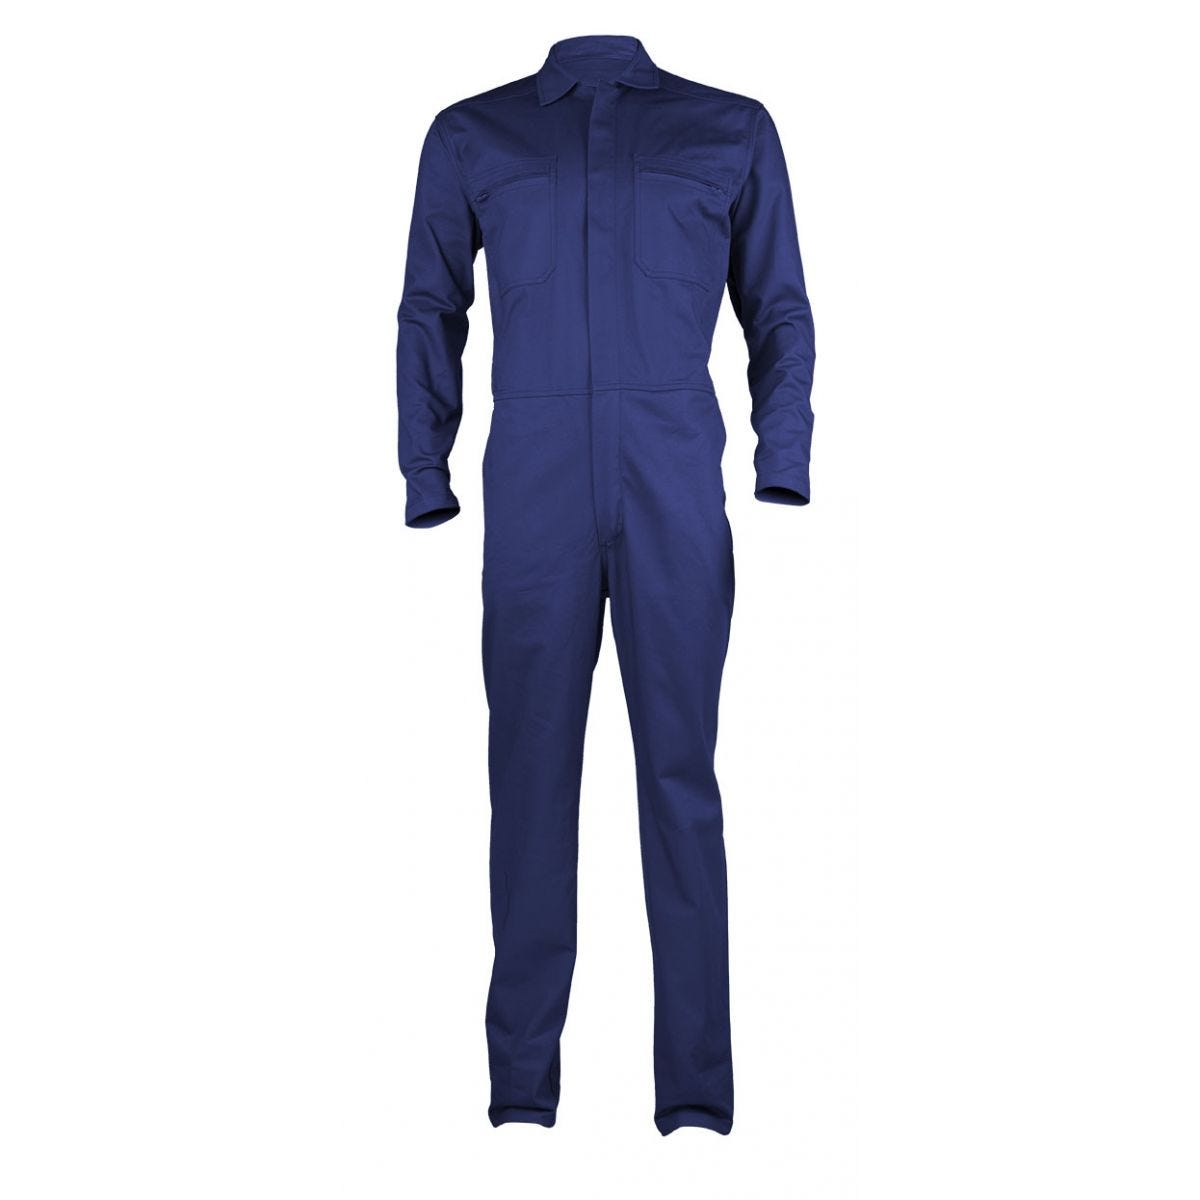 PARTNER Combinaison bleu royal, 100% coton, 280g/m² - COVERGUARD - Taille S 1